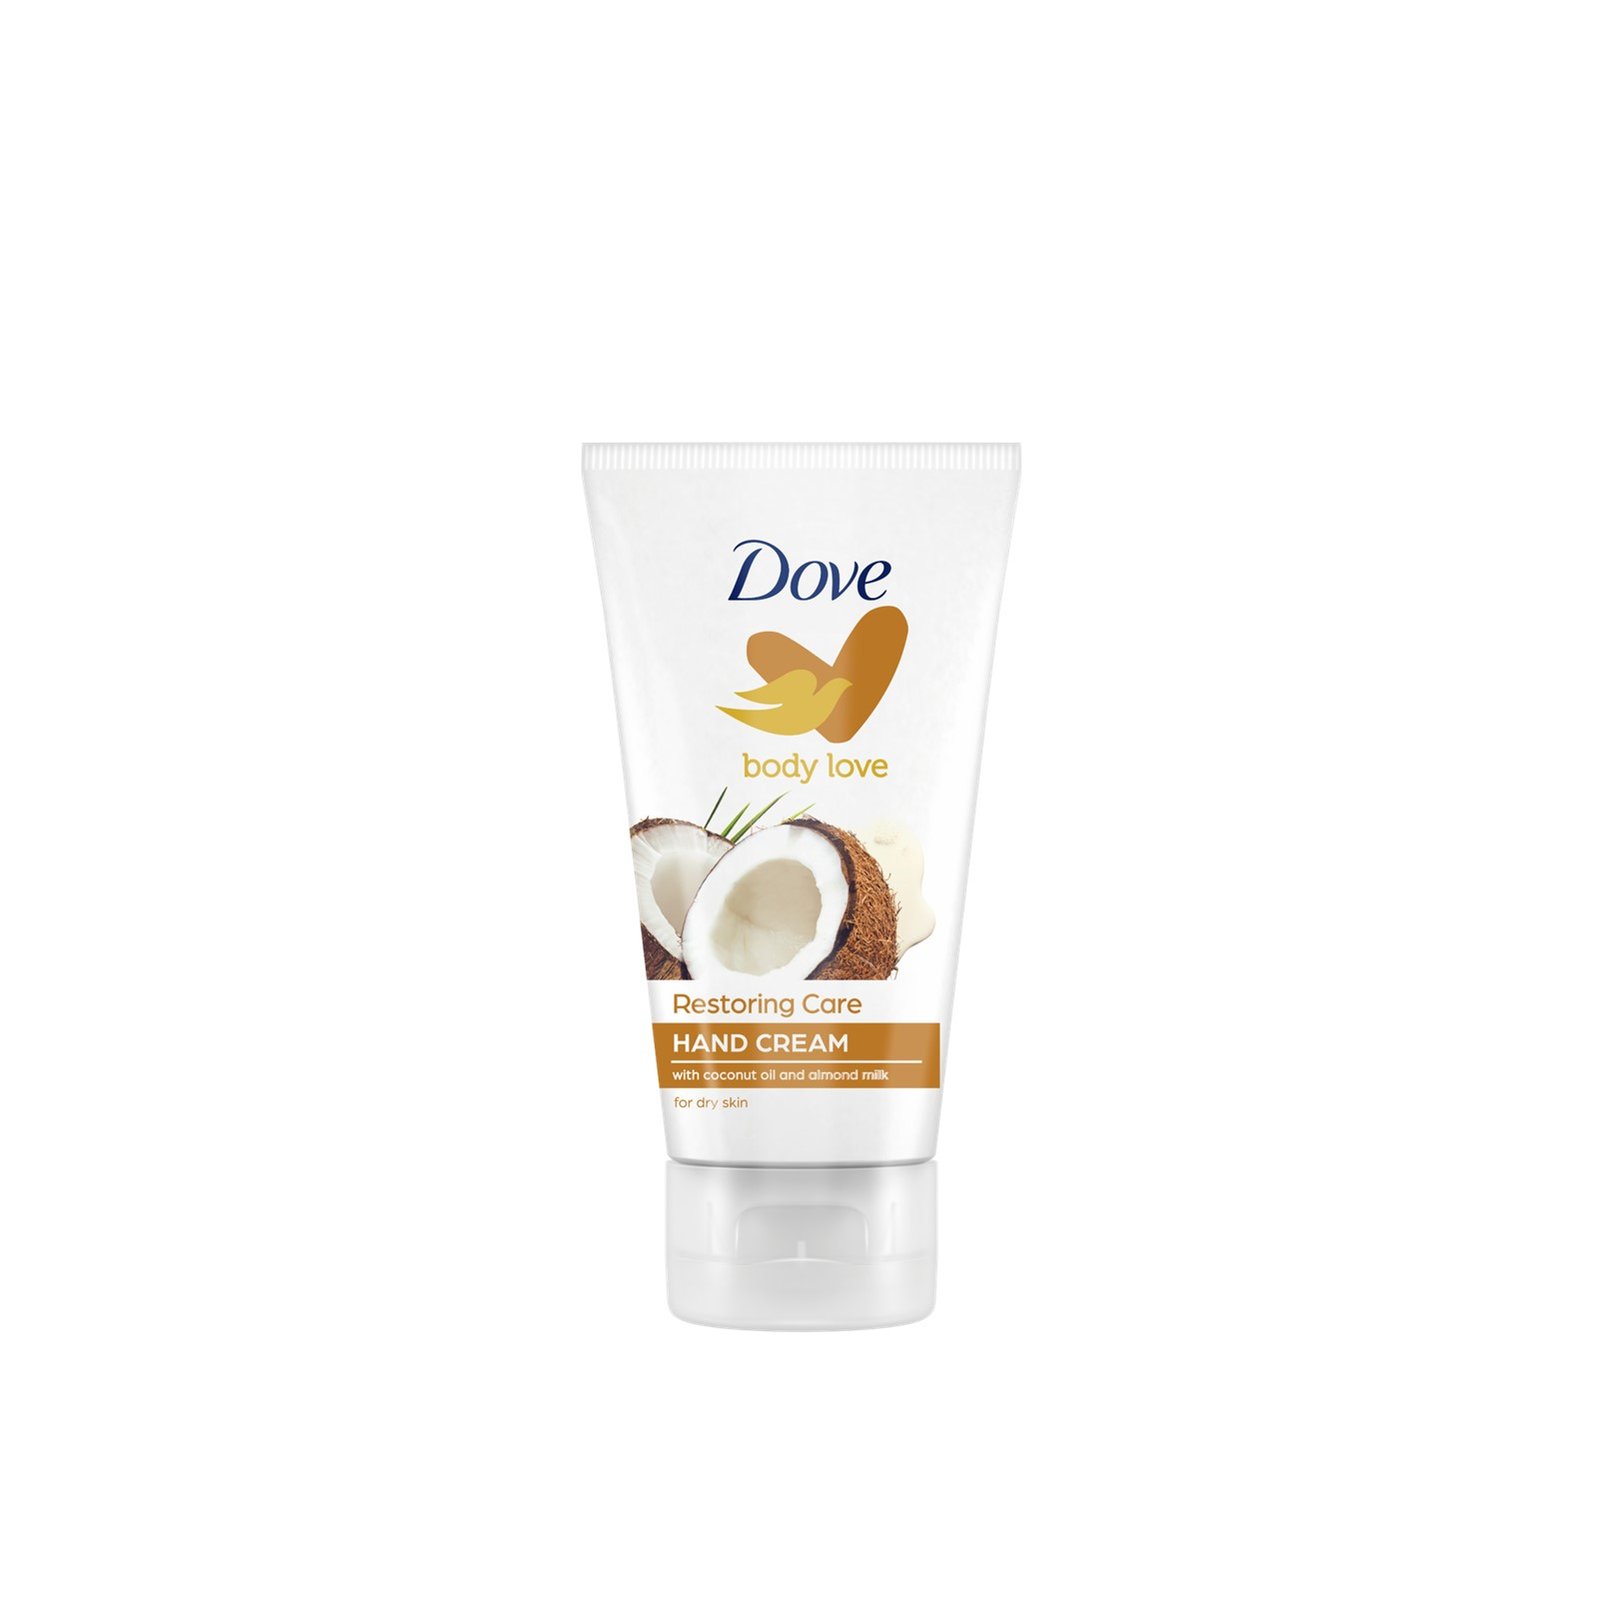 Dove Body Love Restoring Care Hand Cream 75ml (2.53 fl oz)